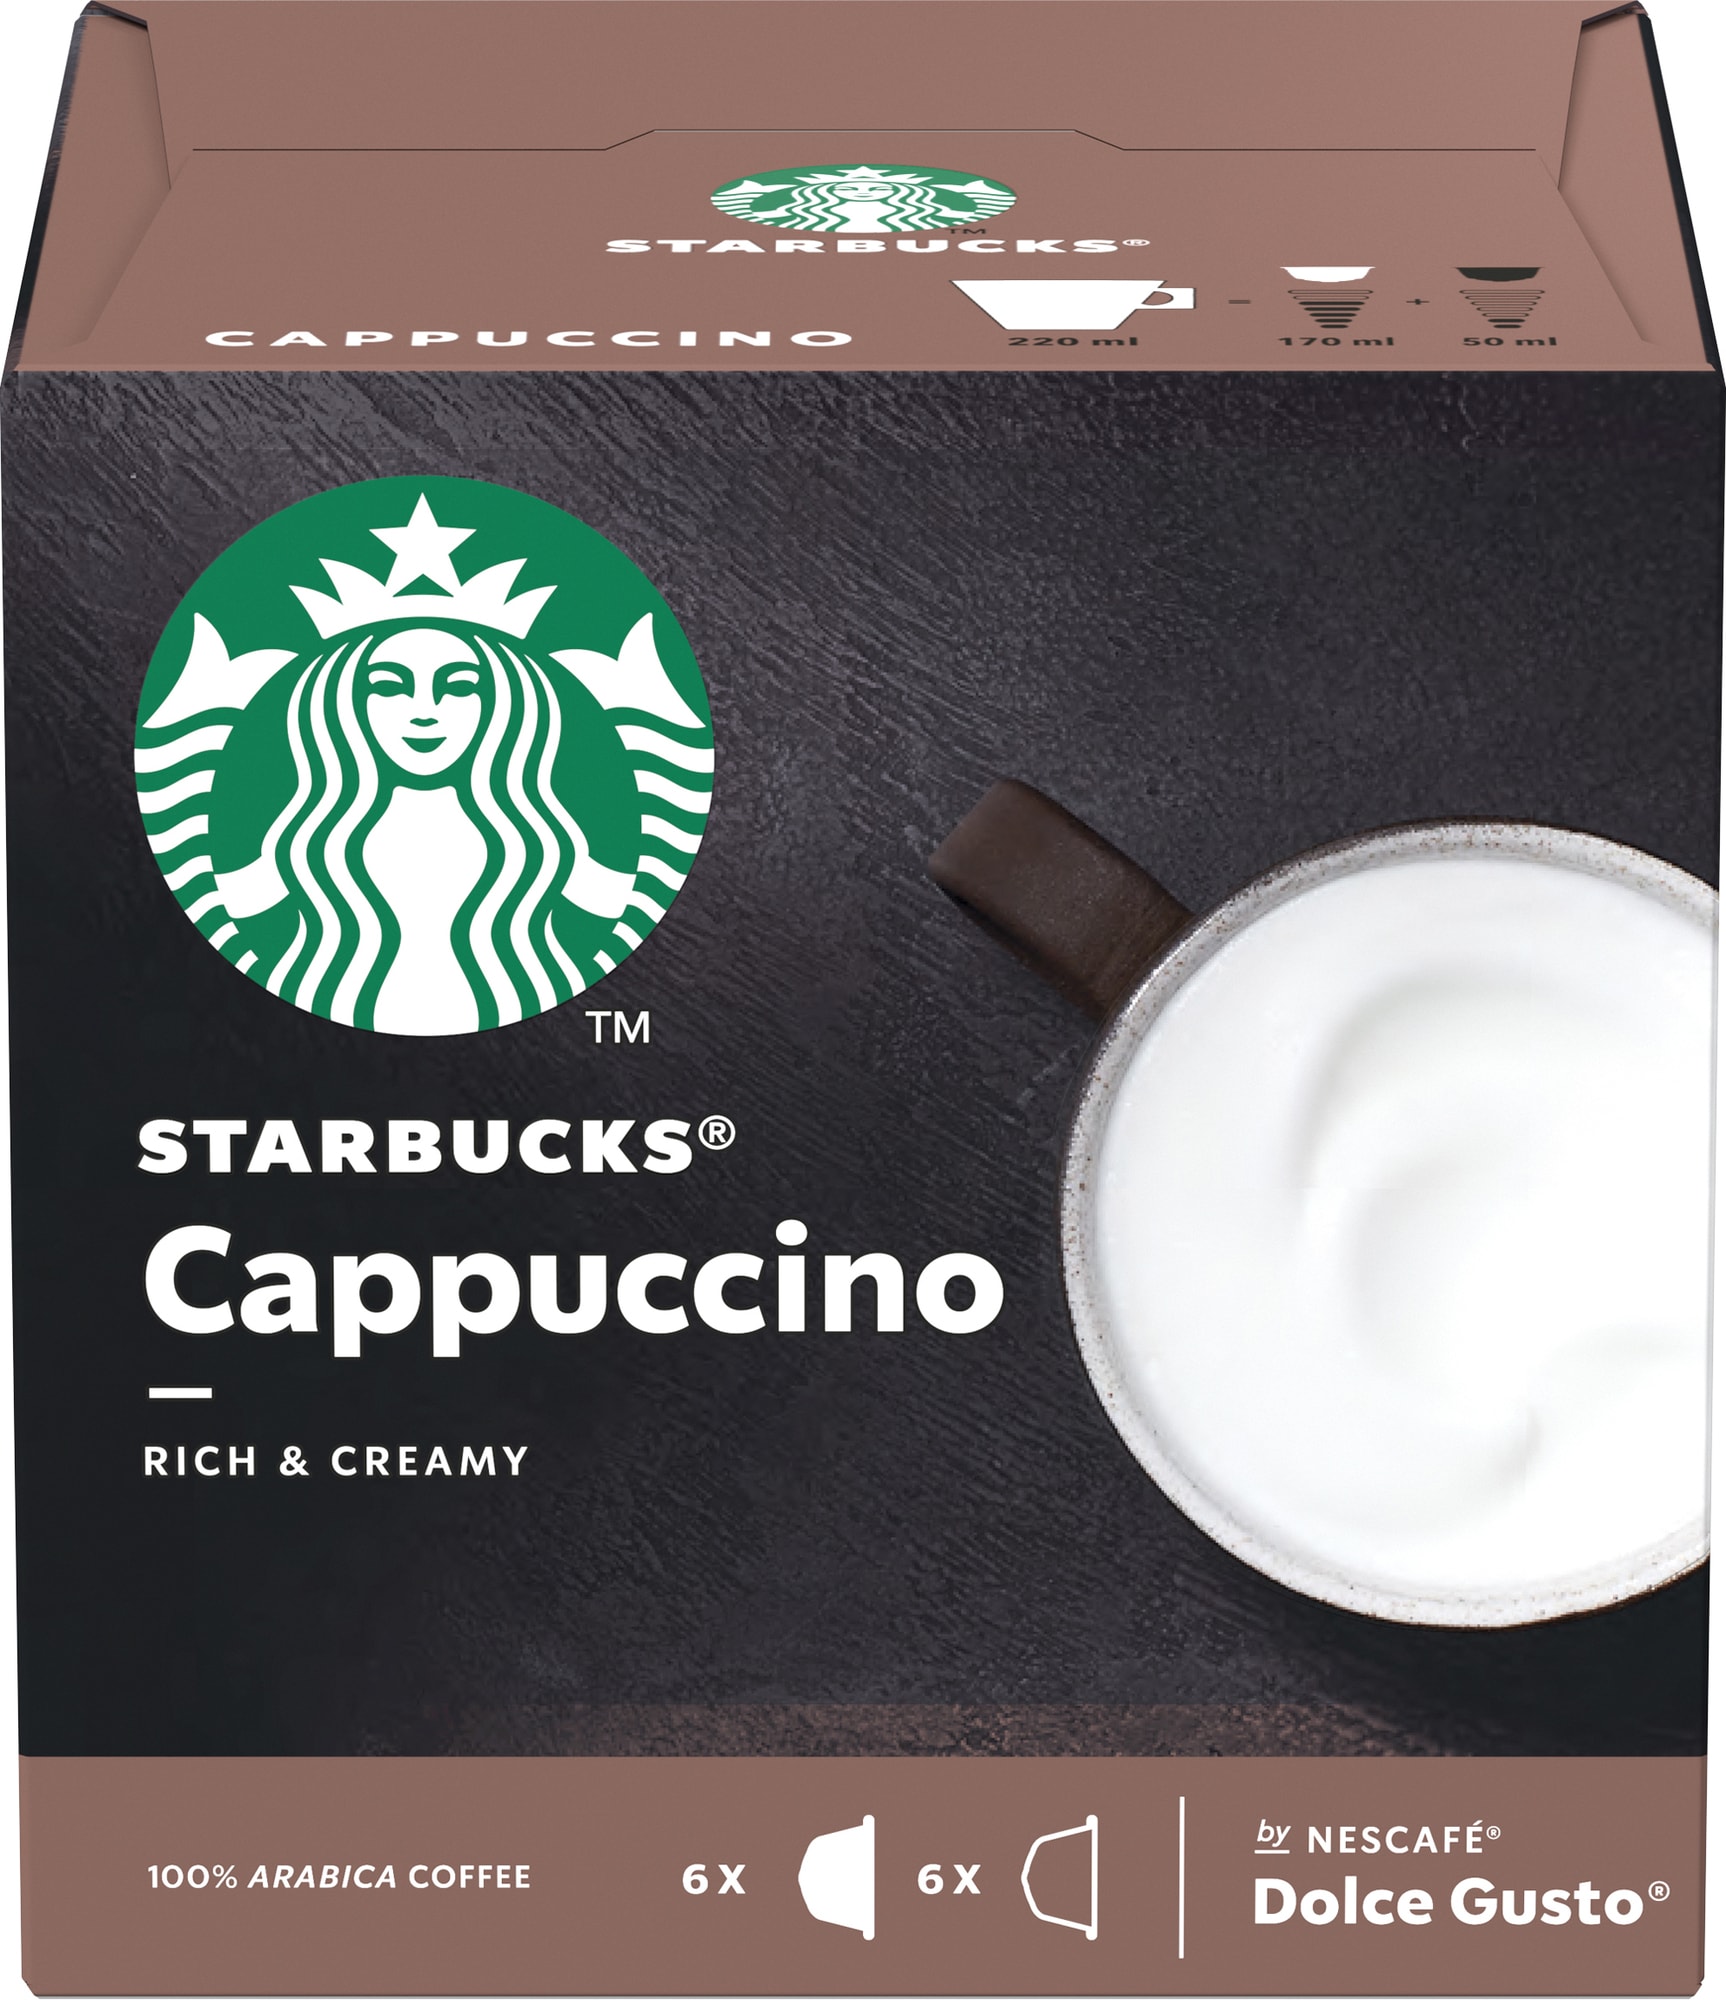 Starbucks Cappuccino kaffekapsler fra Nescafé Dolce Gusto thumbnail